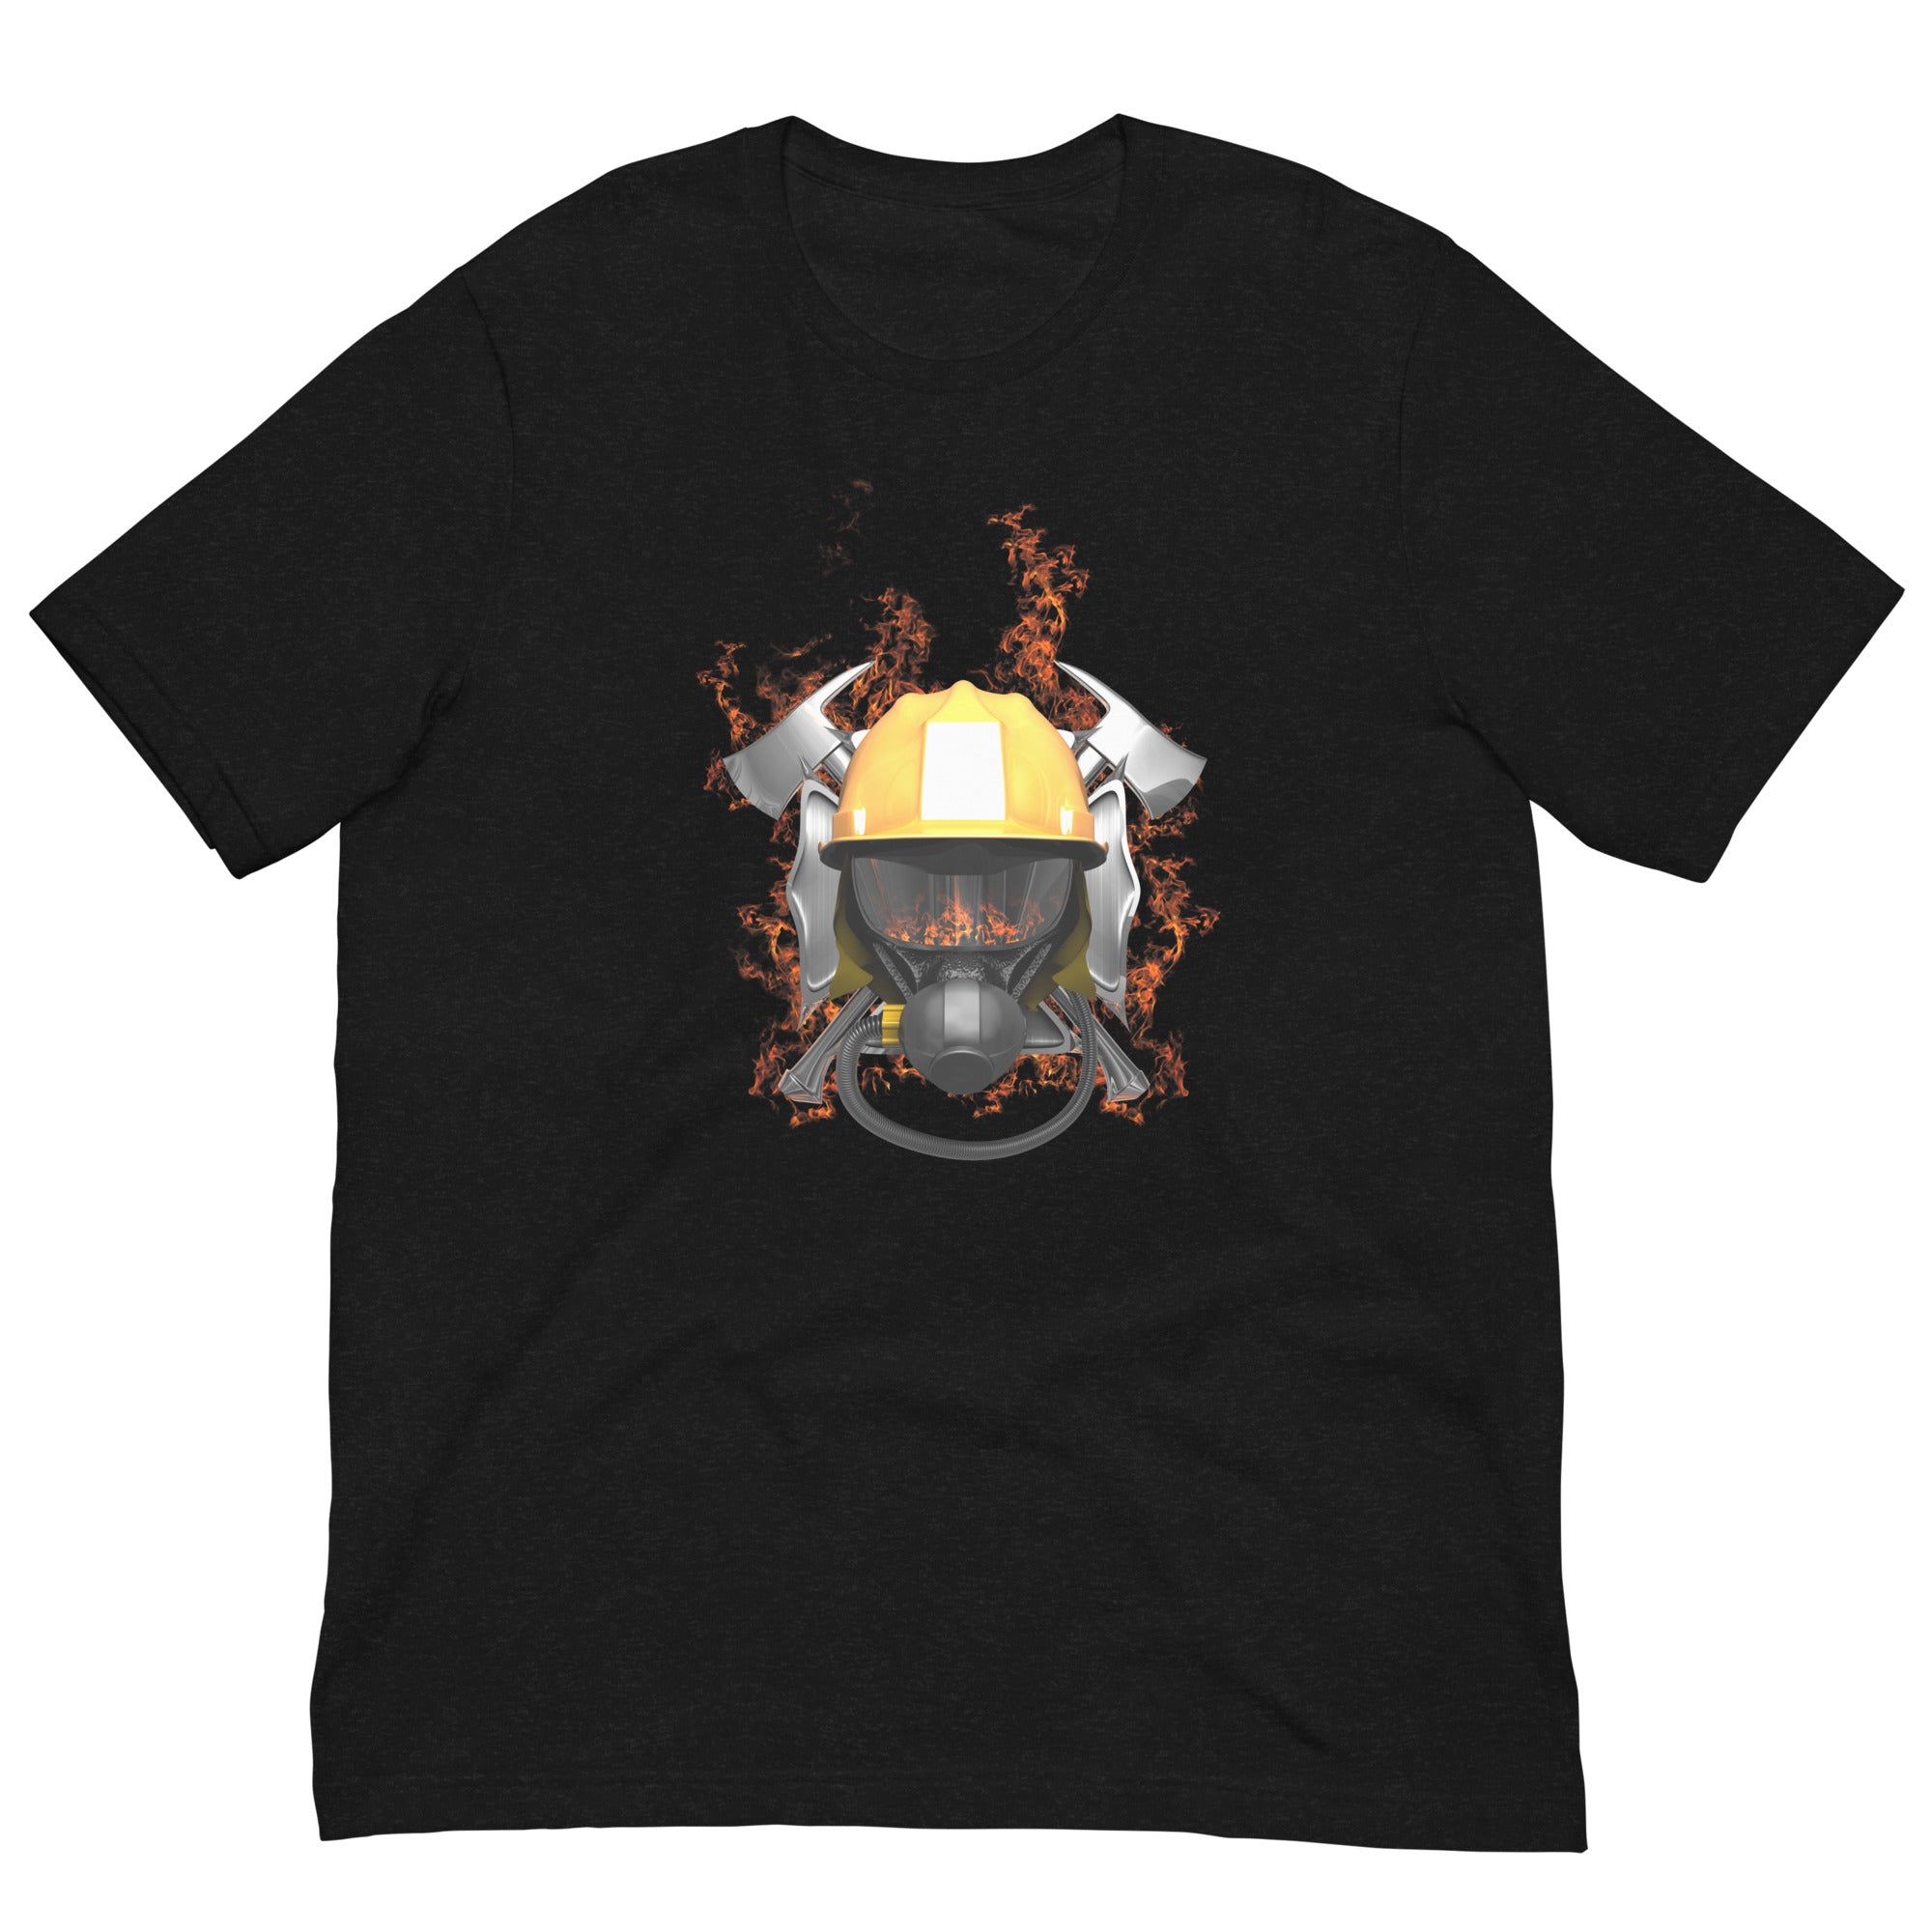 Wildfire-Feuerwehrmann Herren-T-Shirt